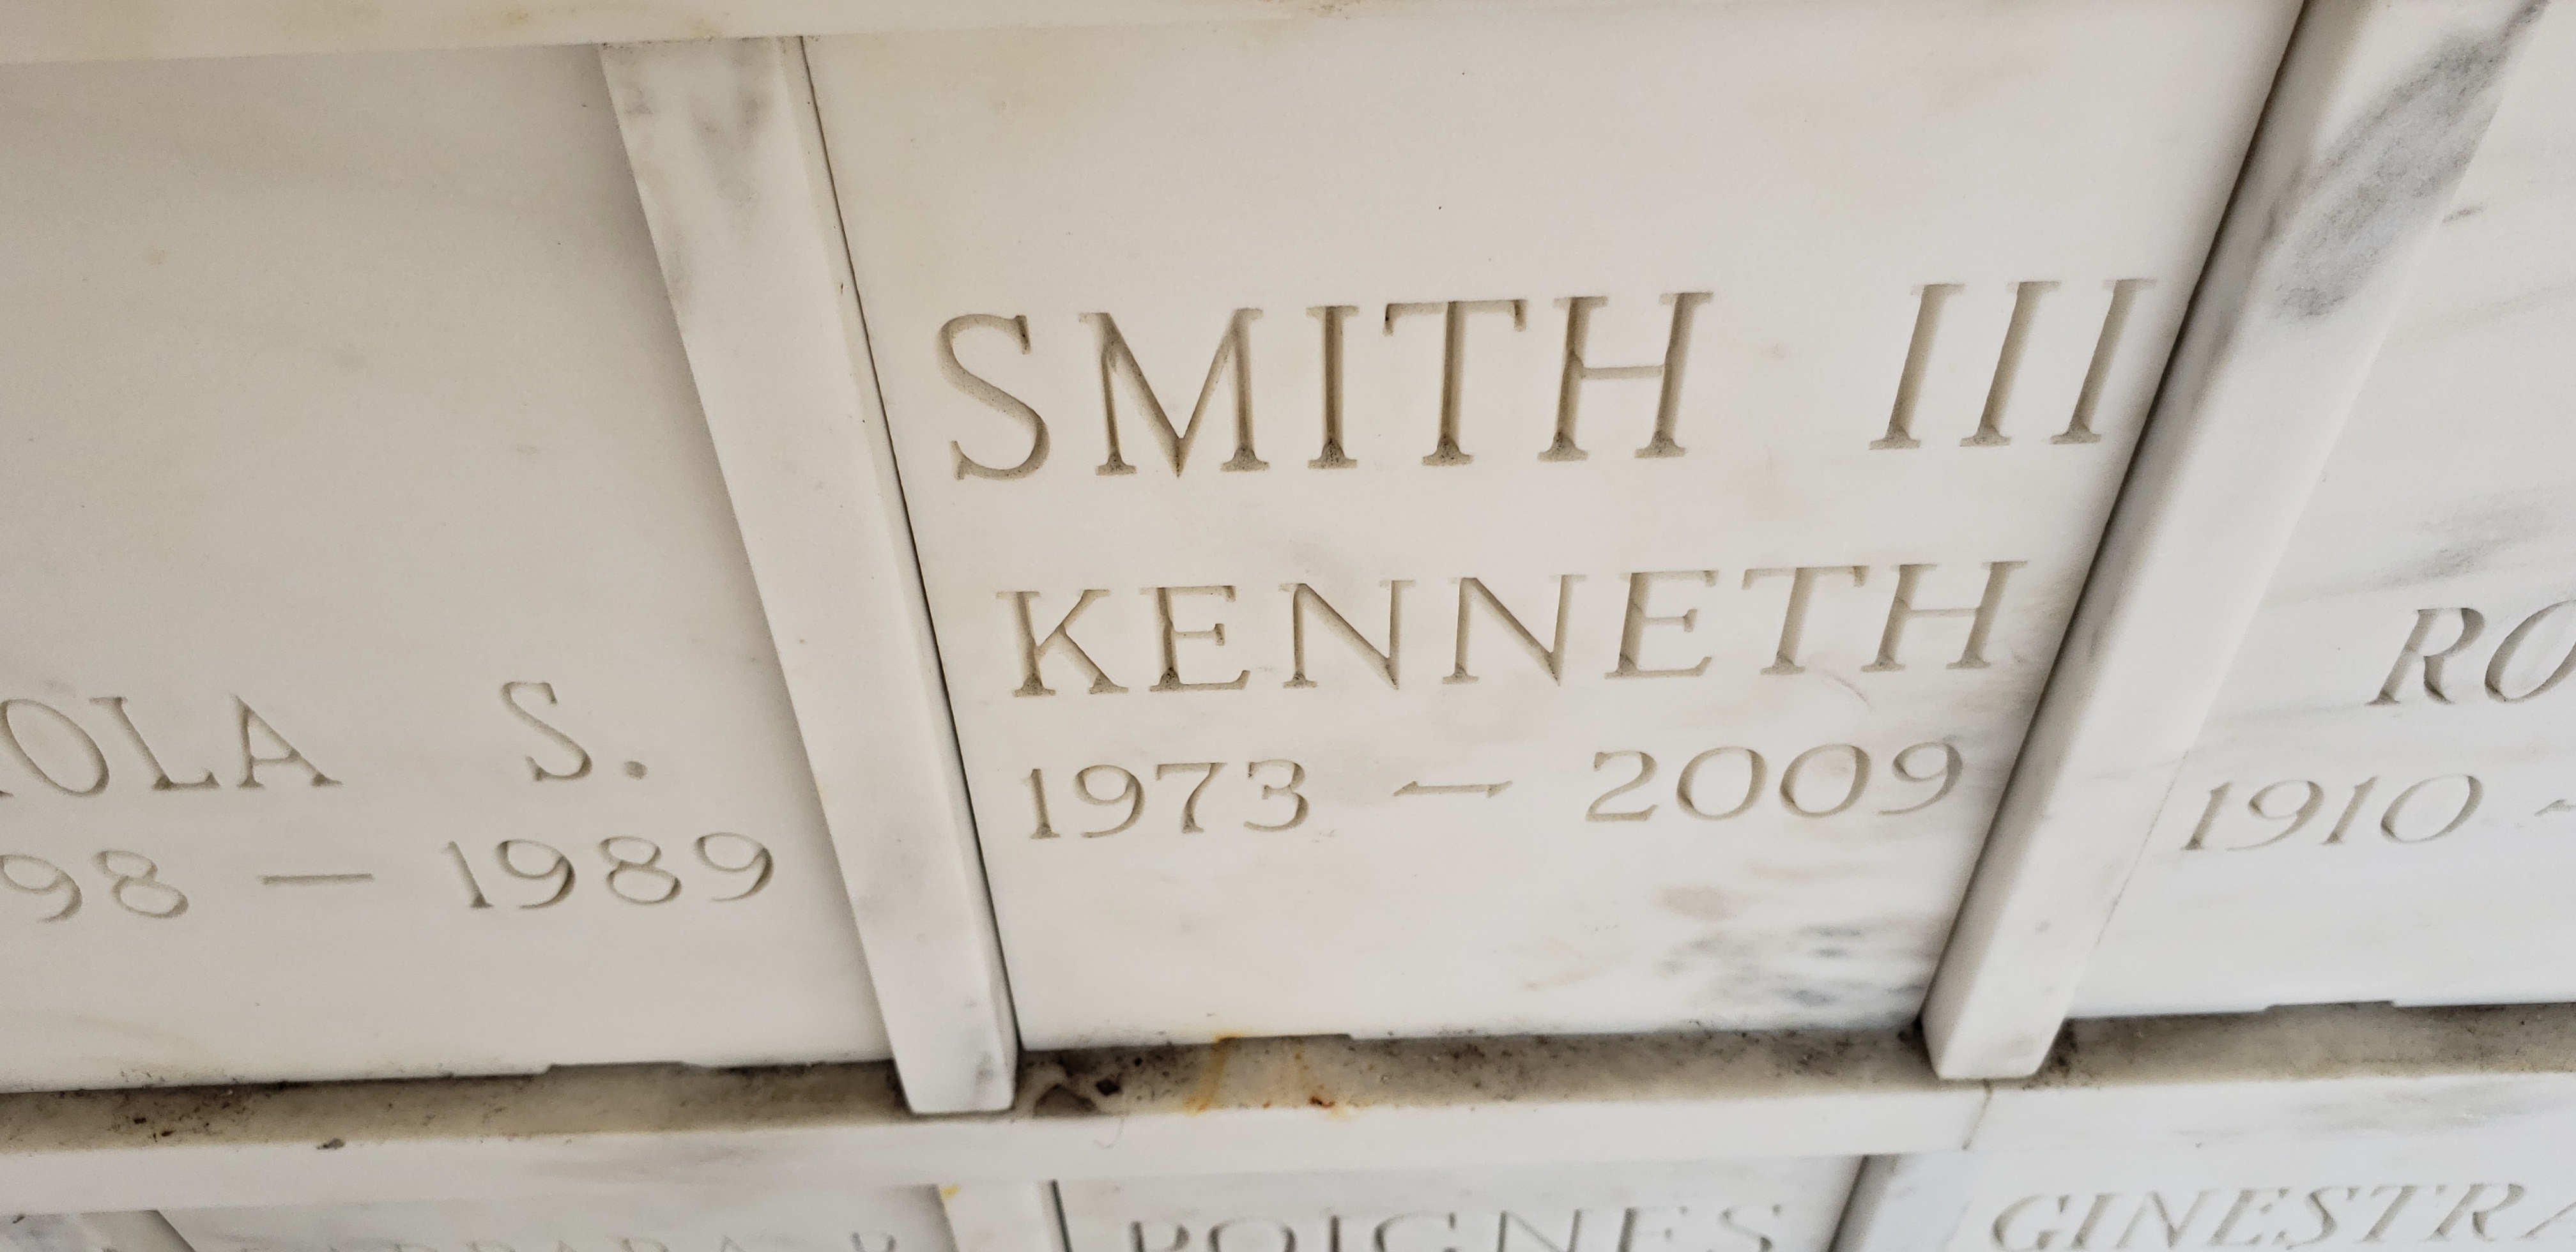 Kenneth Smith, III